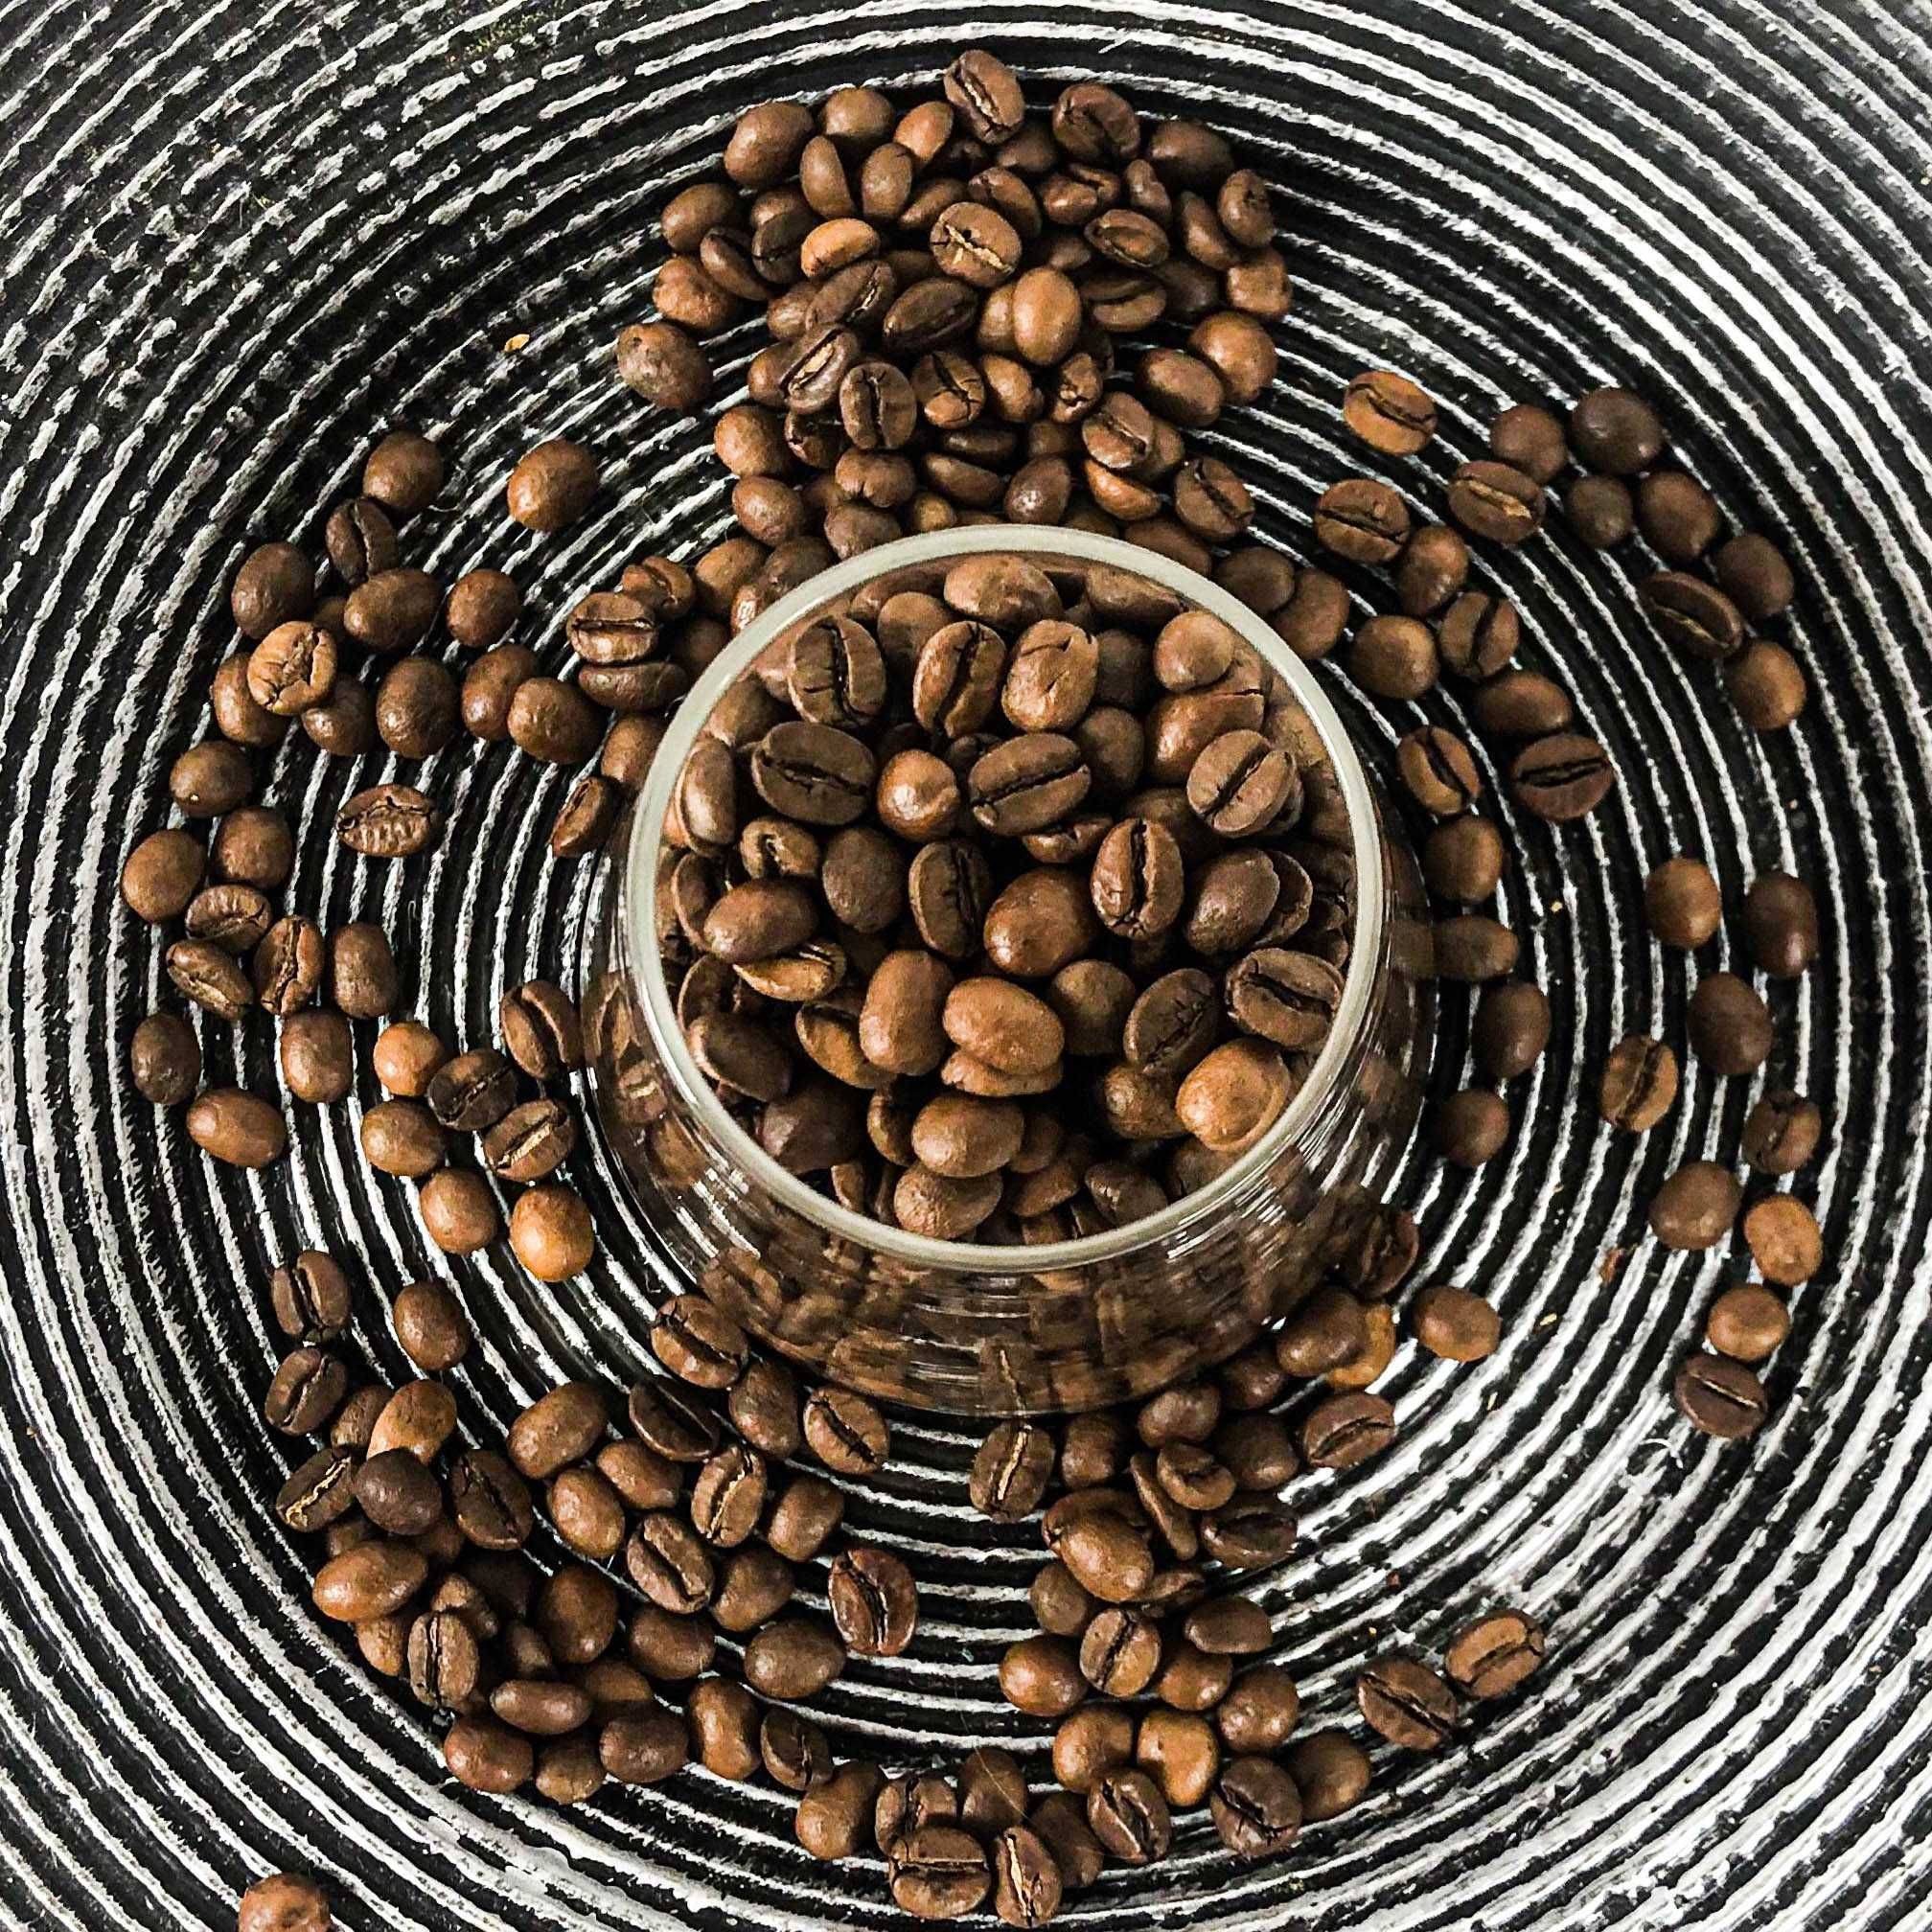 Ціна від обсмажчика! Кава в зернах купаж 70%30% Арабіка Робуста. Кофе